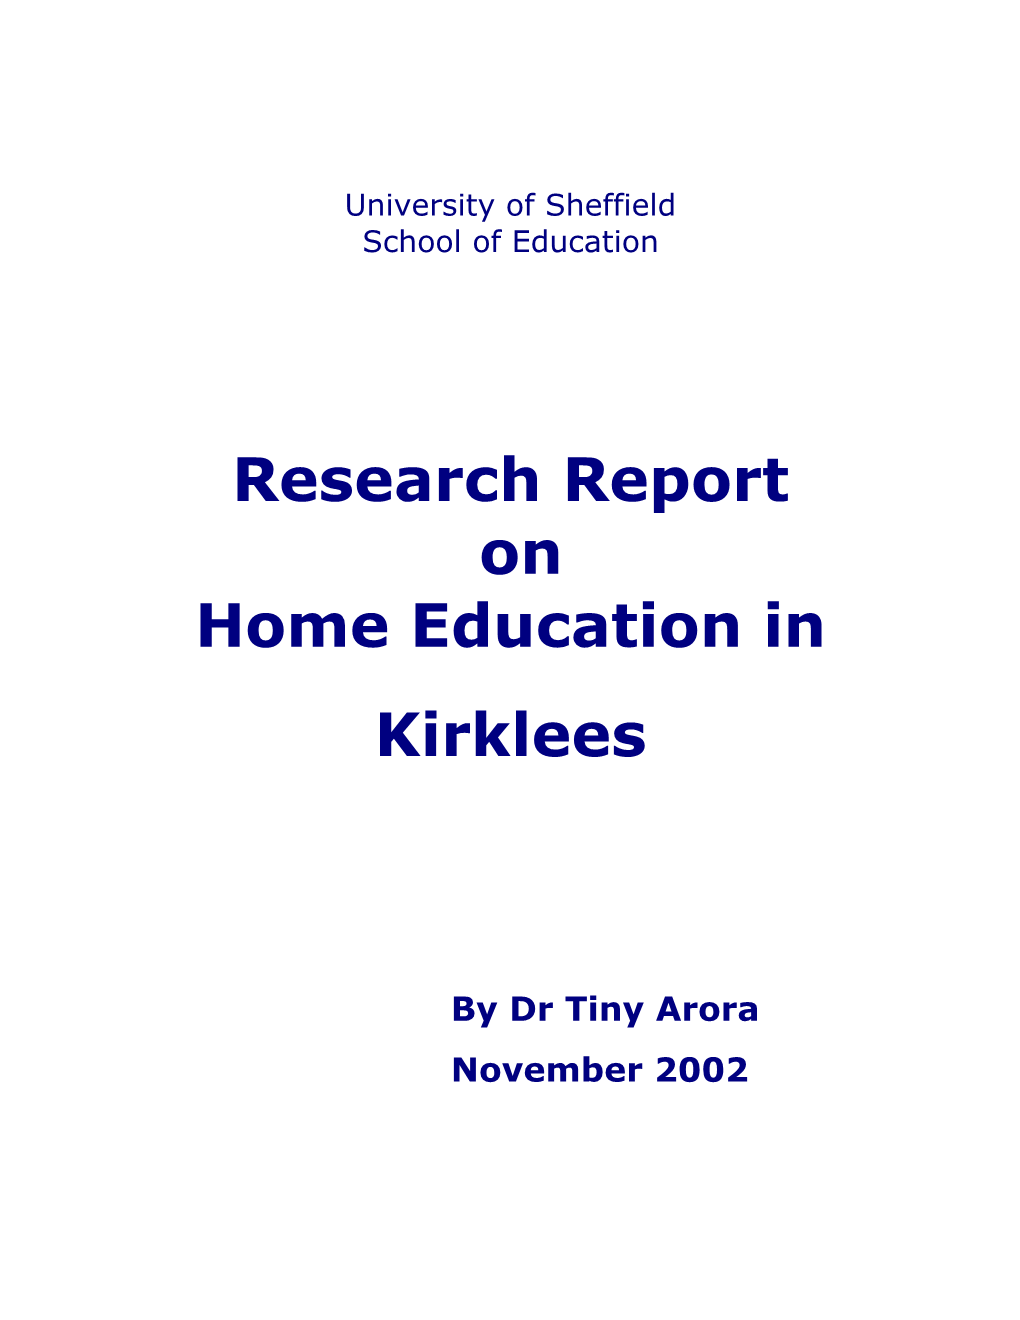 Report on Home Education in Kirklees